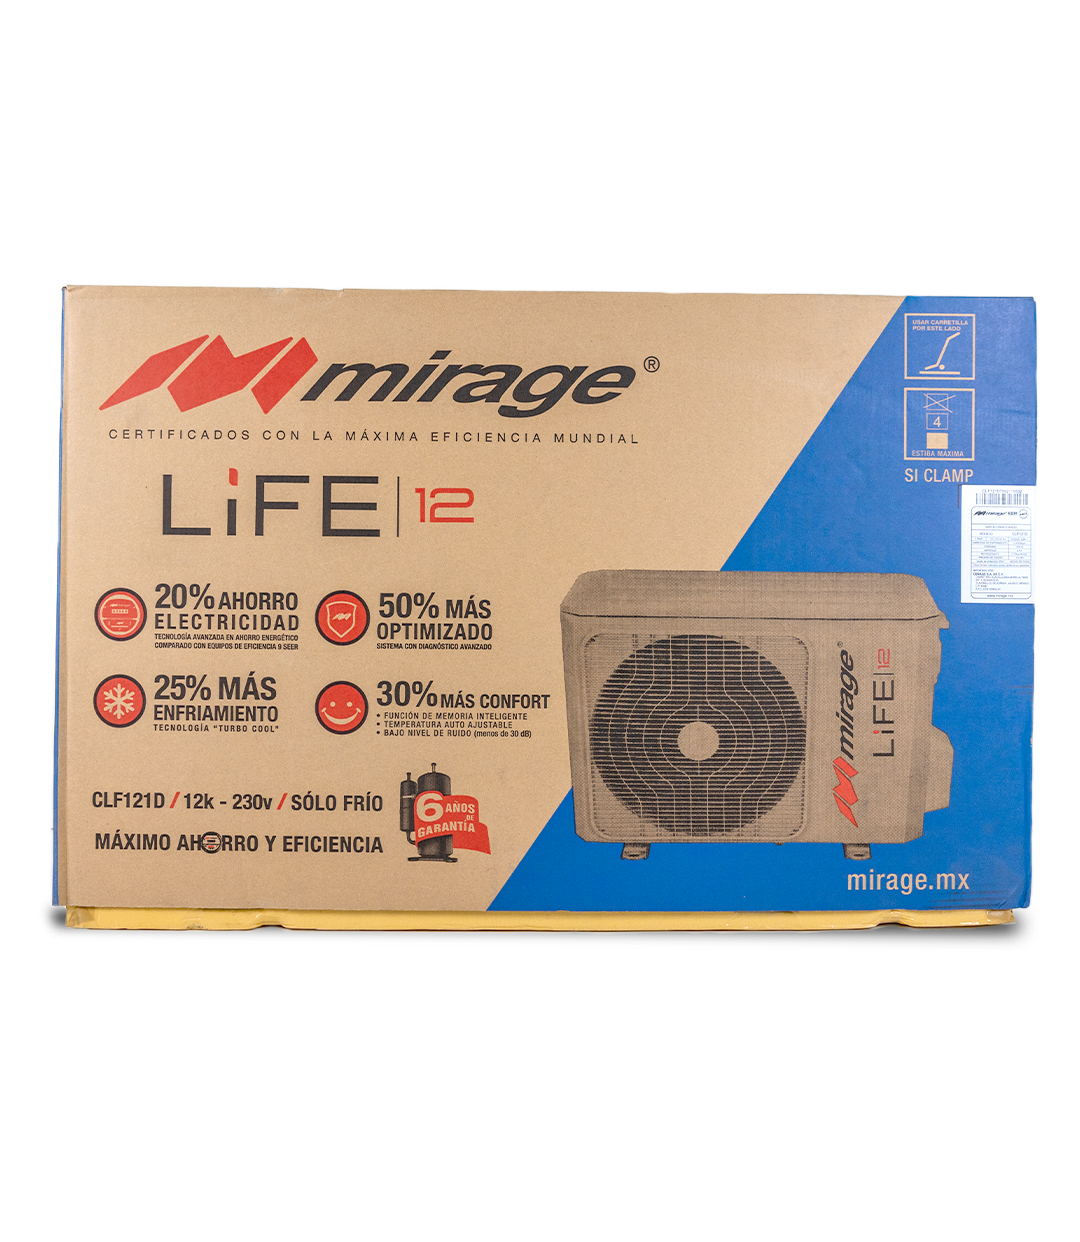 Mirage Life 12 1 Tonelada a 220v